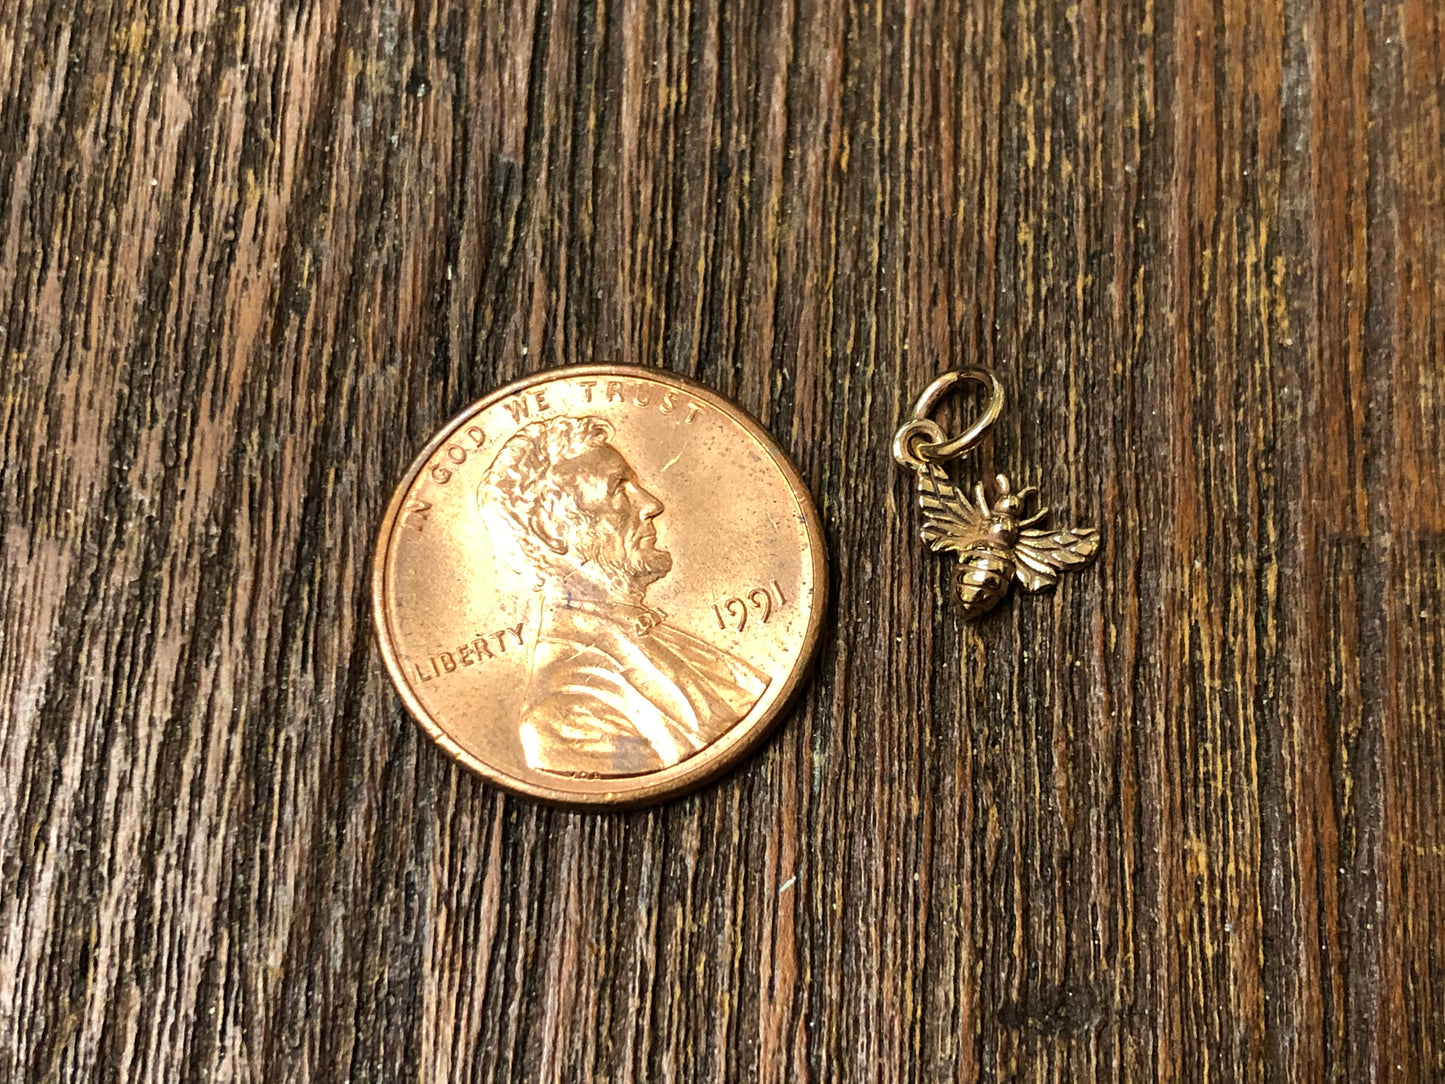 Tiny Bronze Honeybee Charm